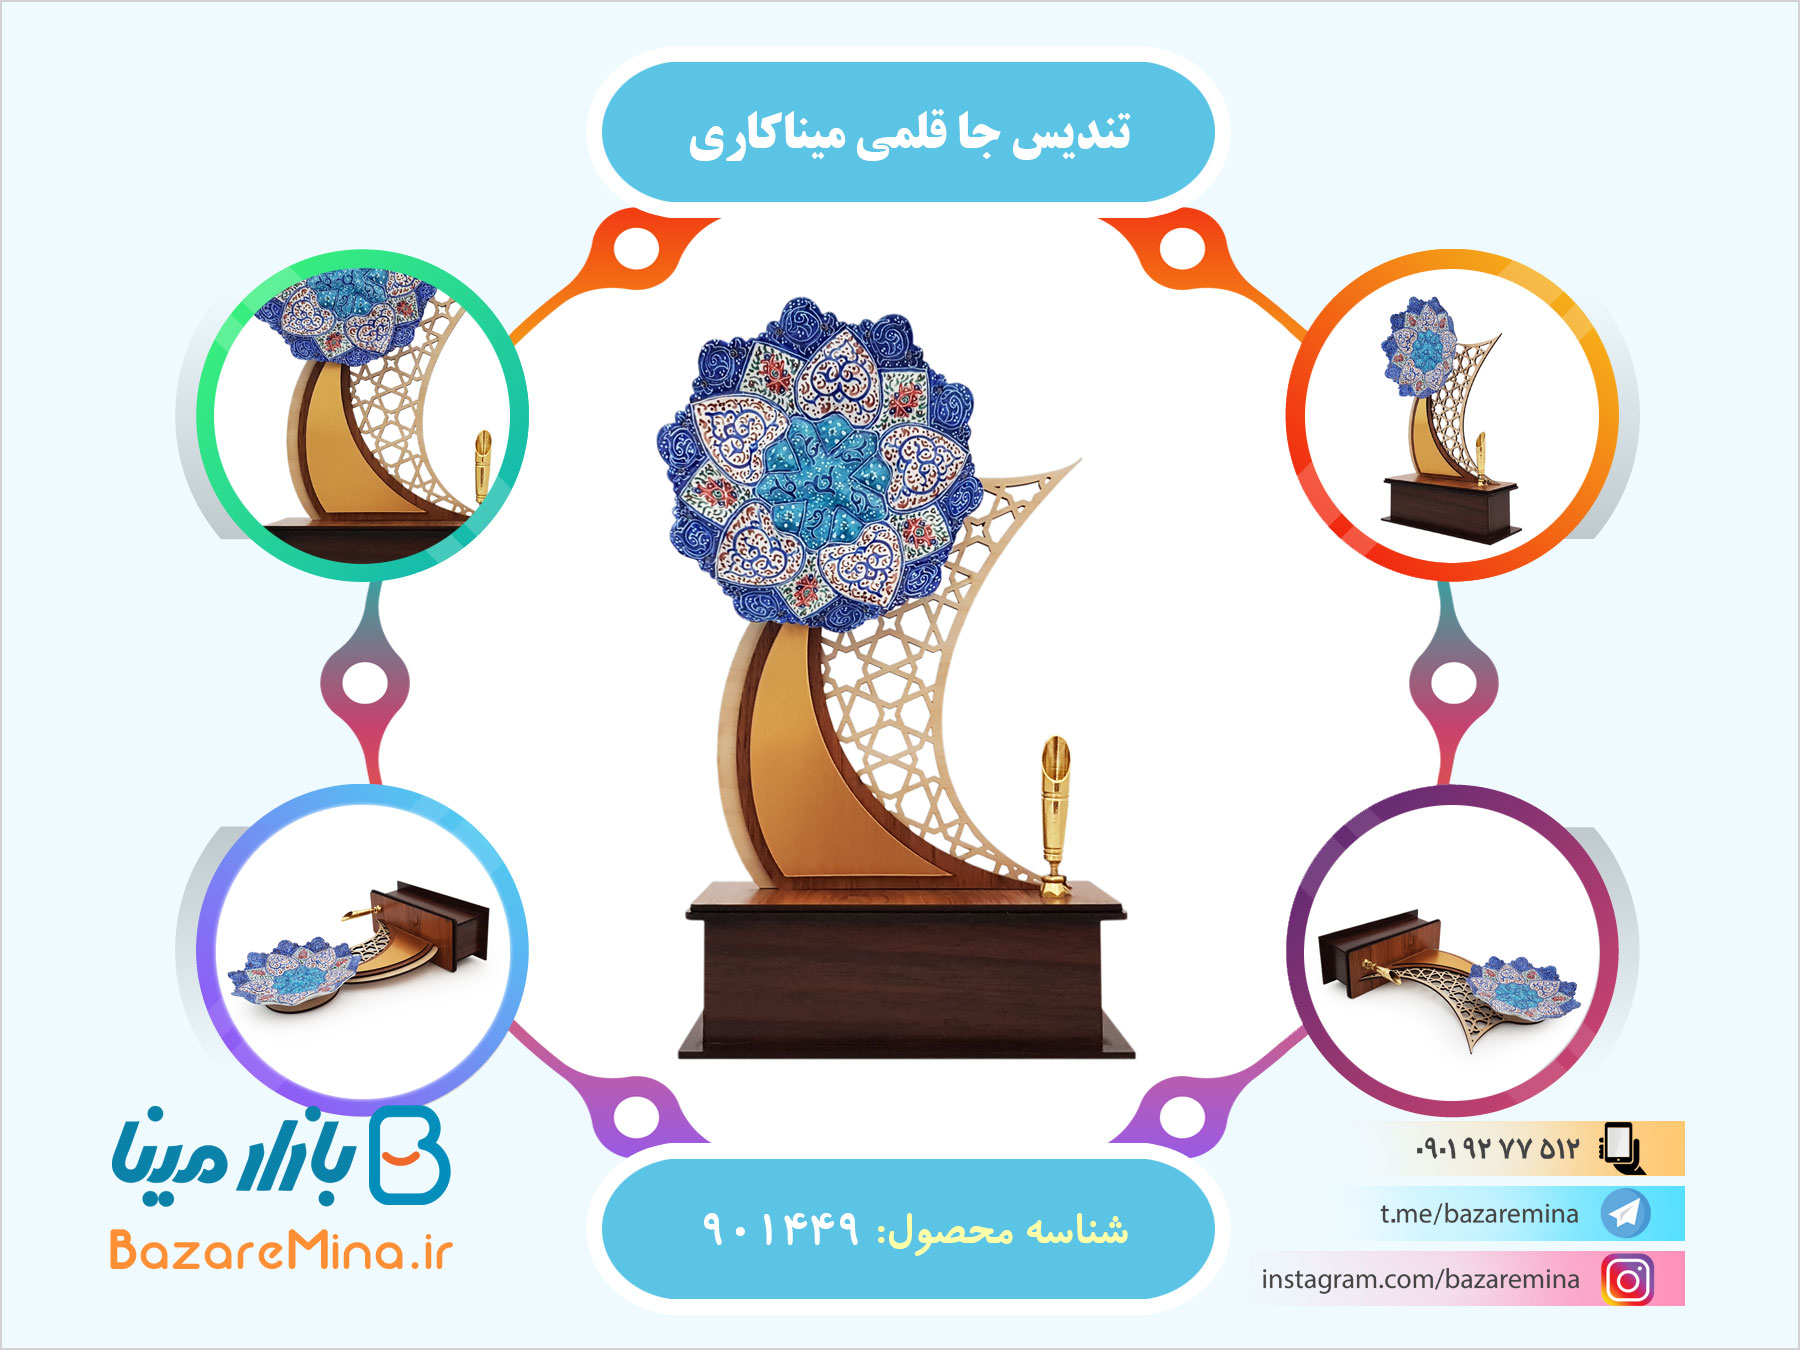 مرکز تولید هدایای تبلیغاتی میناکاری اصفهان با چاپ لگو و نام